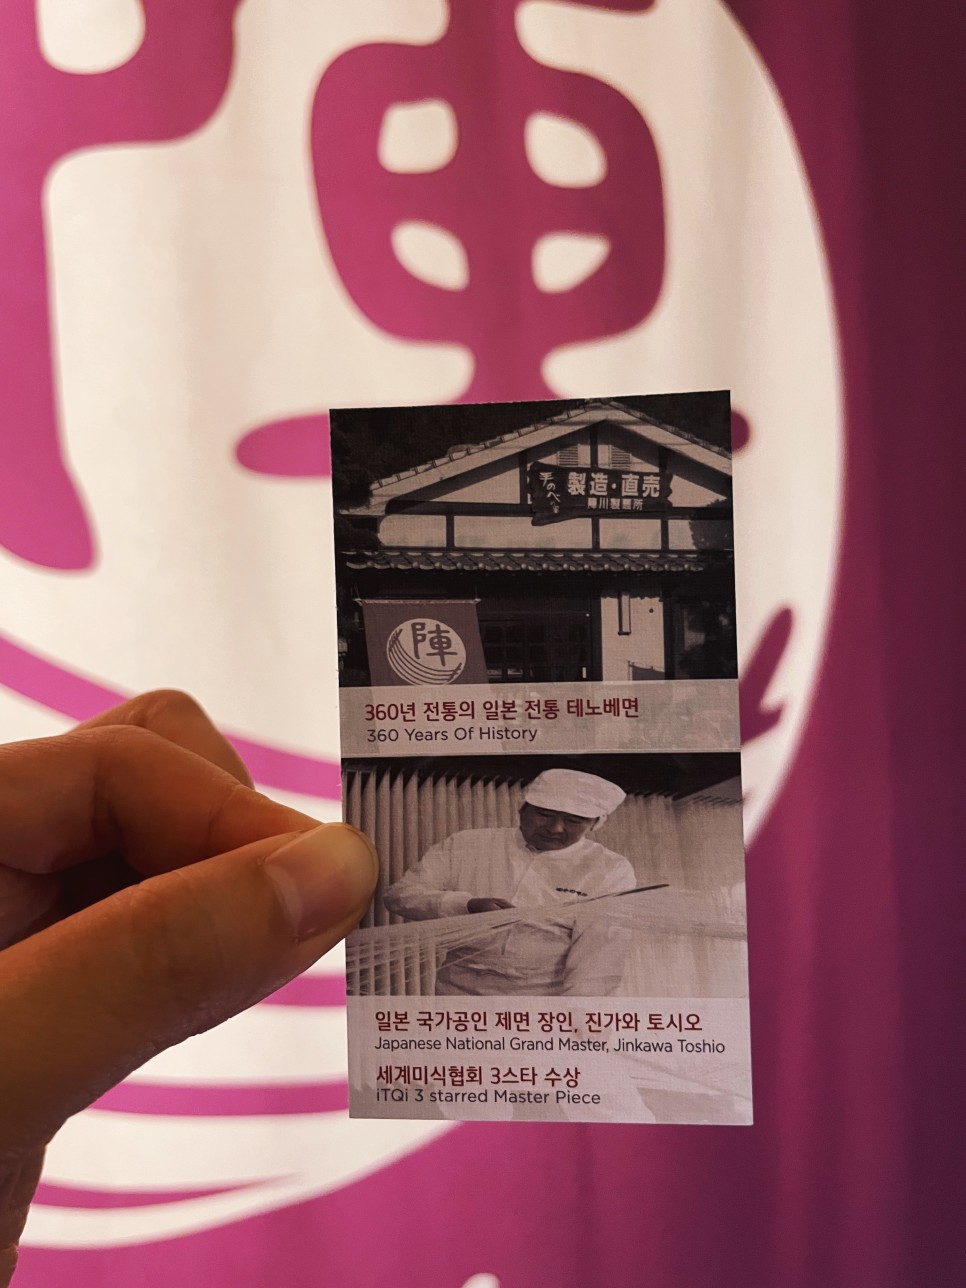 역삼 모임장소로 유명한 진가와 한국본점 강남코스요리